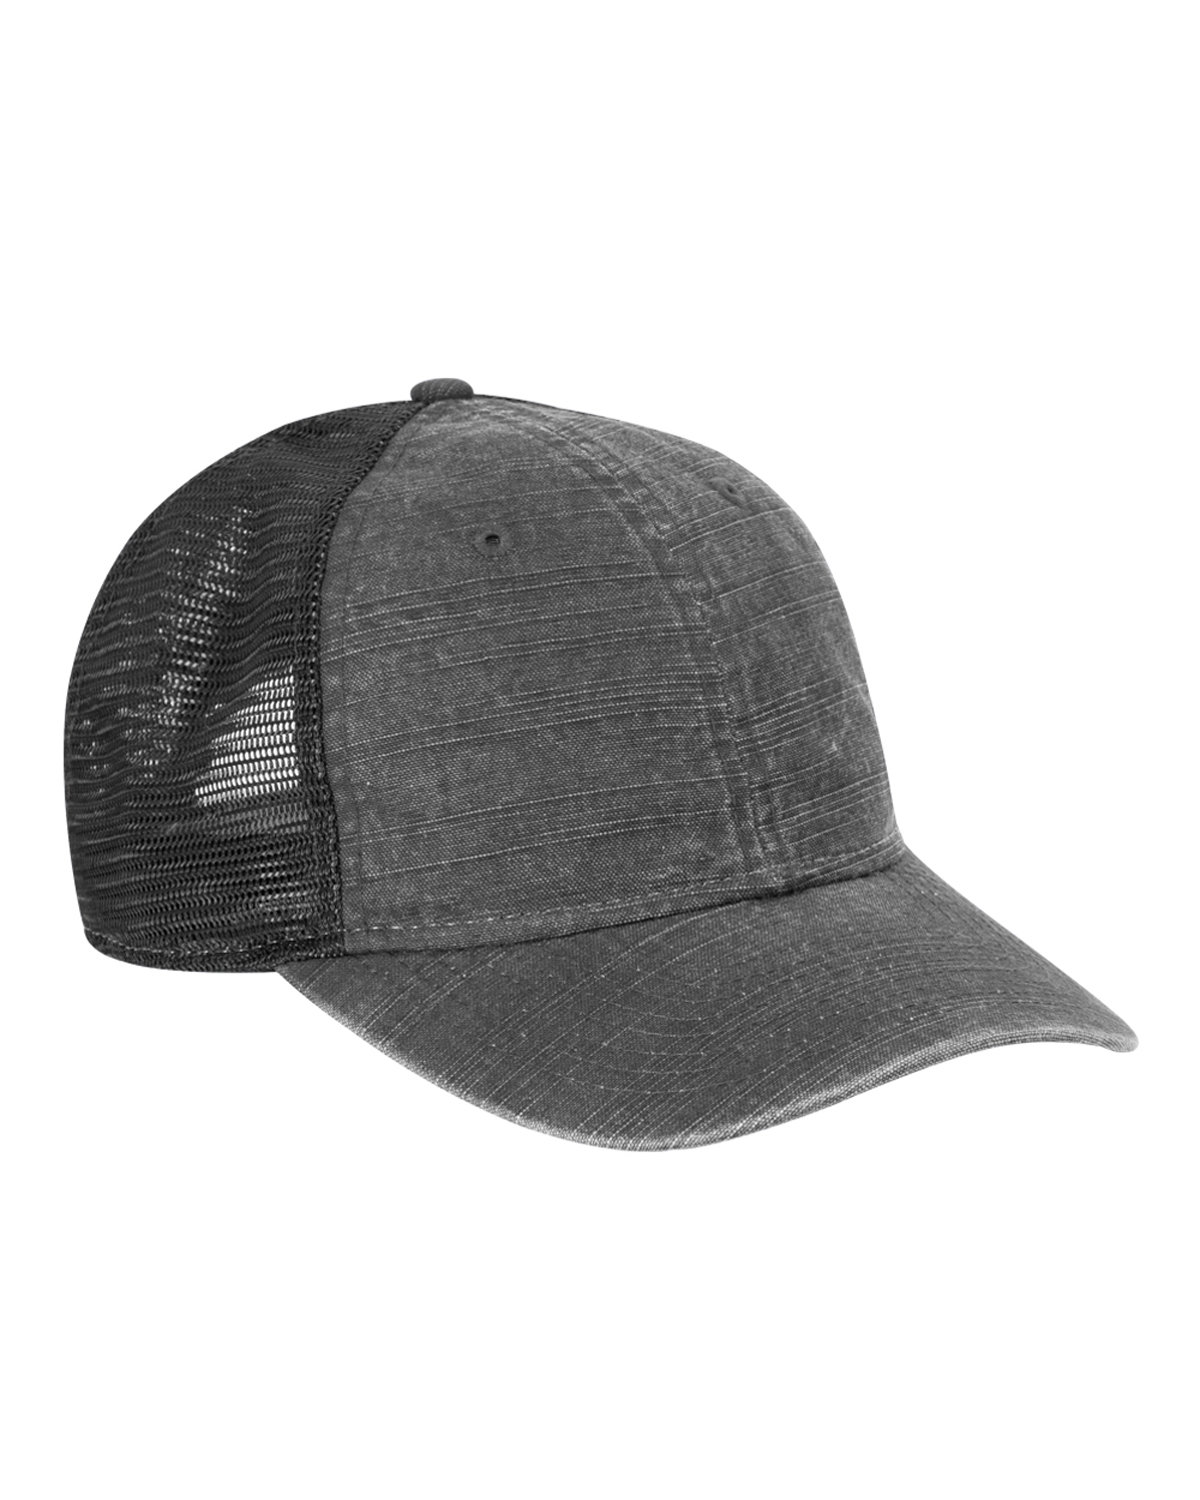 Buy Cotton Impact Slub Trucker Hat - Dri Duck Online at Best price - OK